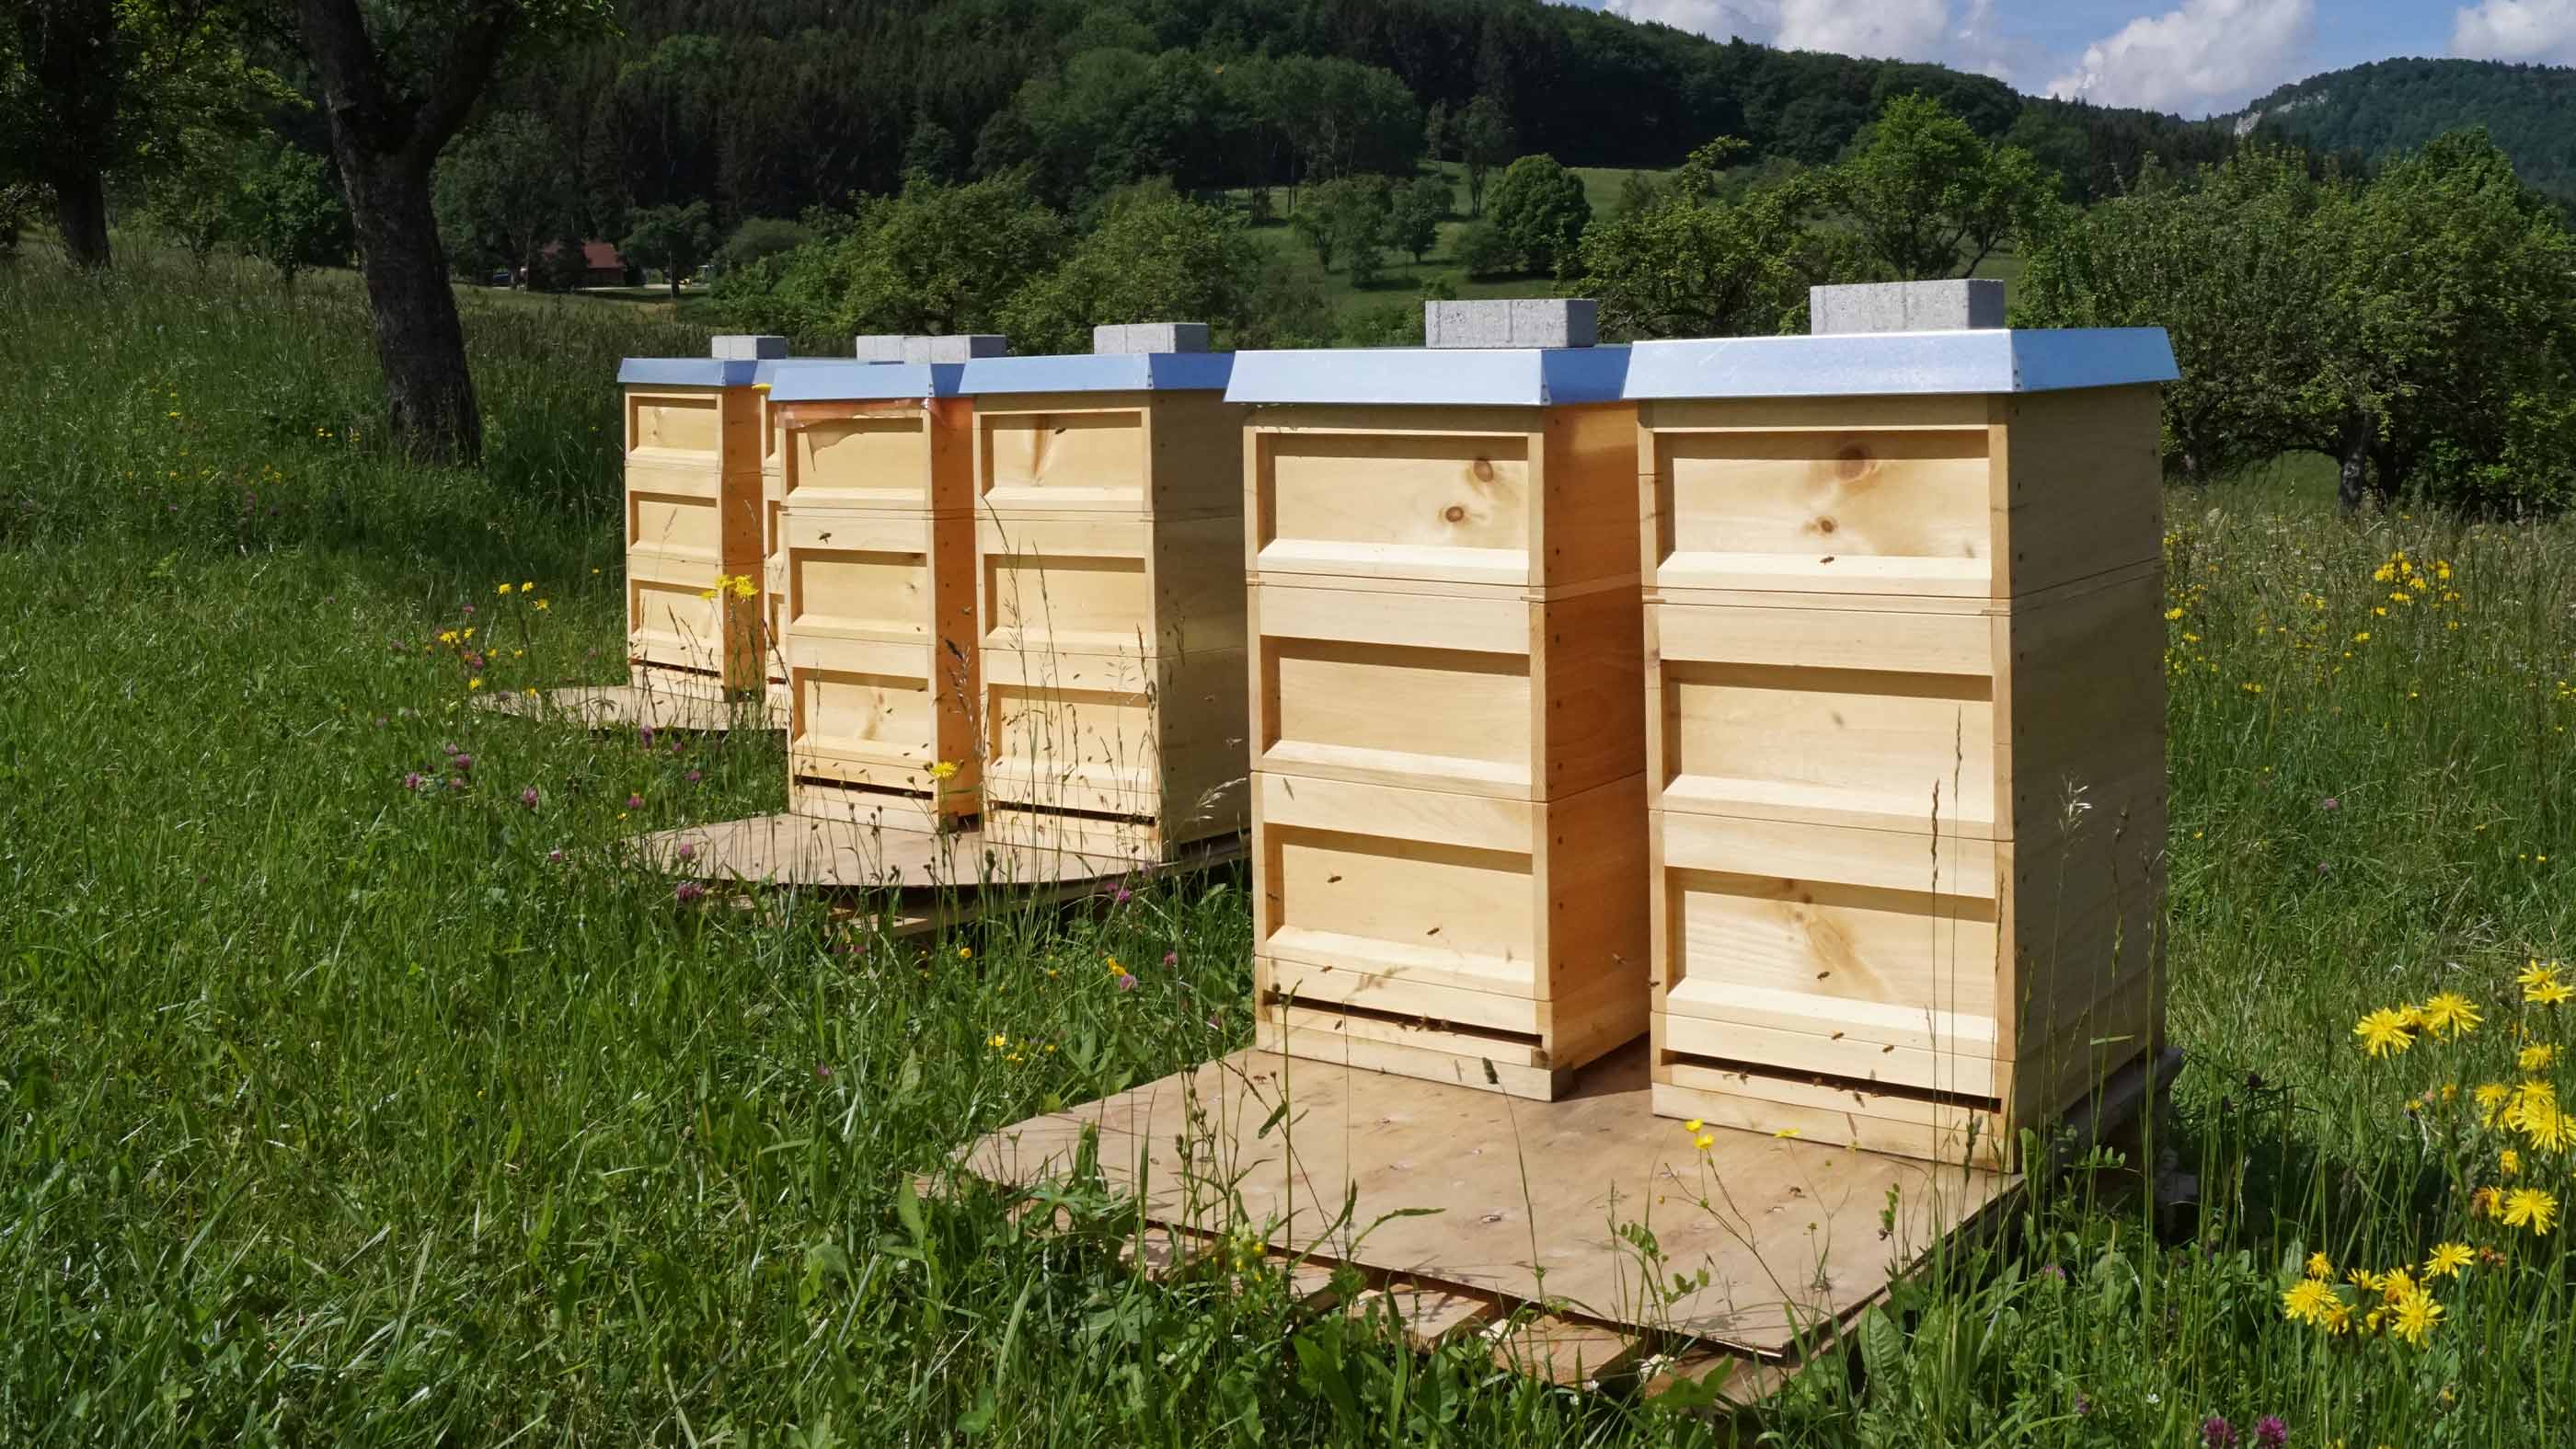 De zes bijenkasten van mey staan per paar in een rij op een wei in Lautlingen, Duitsland | mey®